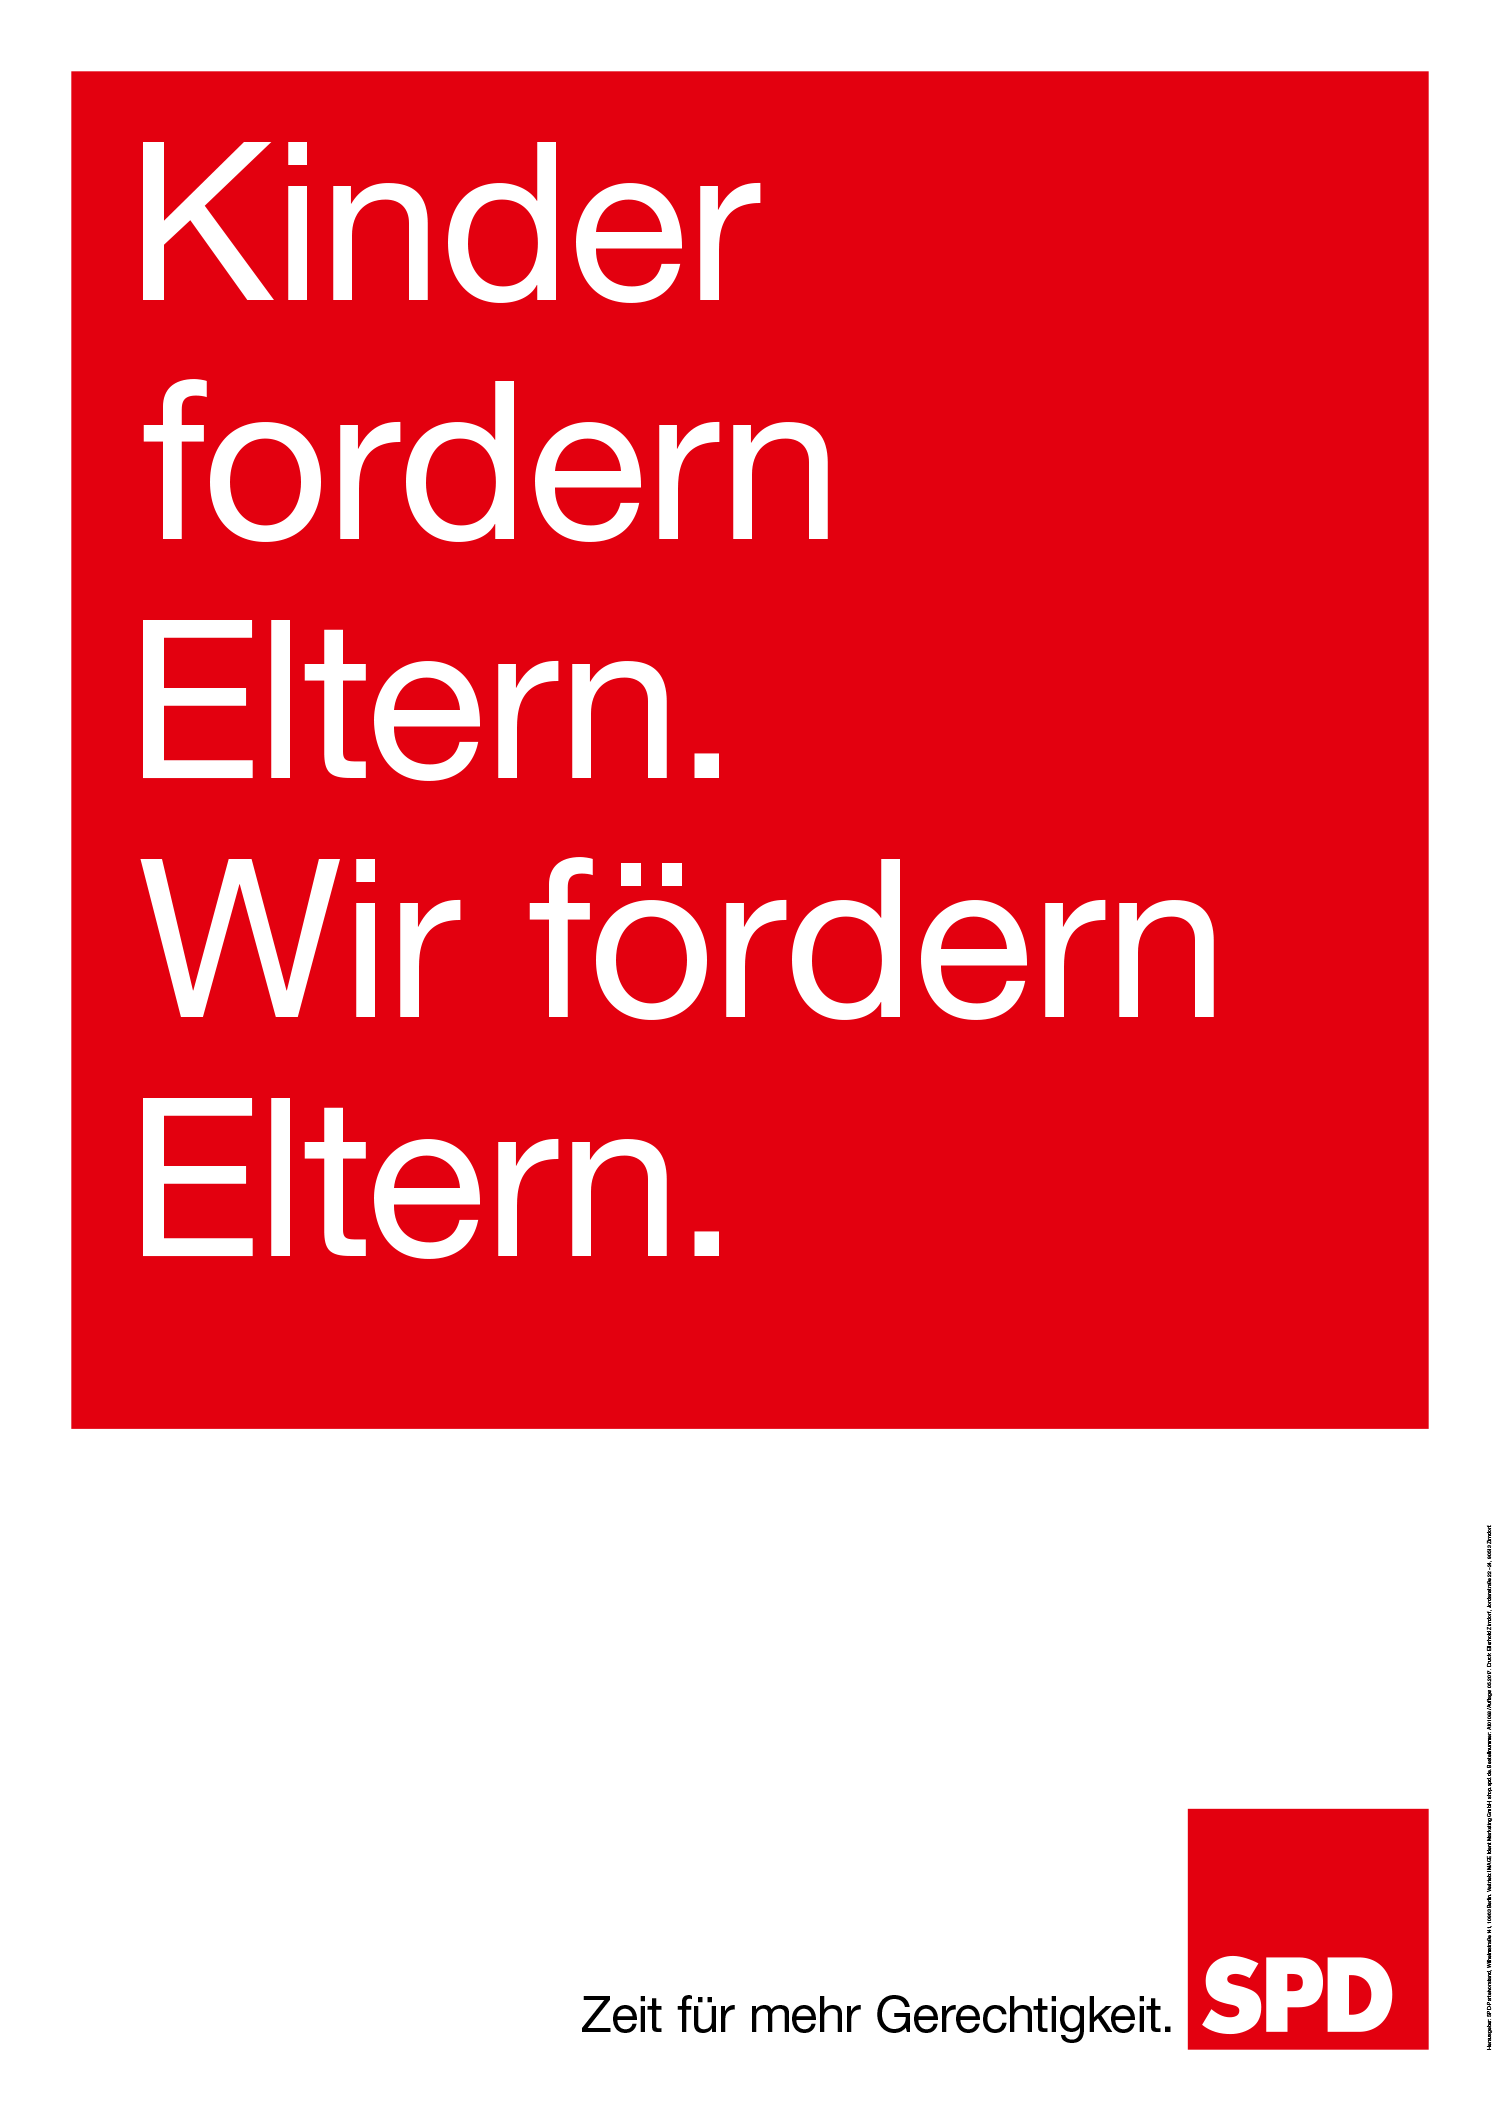 Bundestagswahl 2017 Plakat SPD, Familie